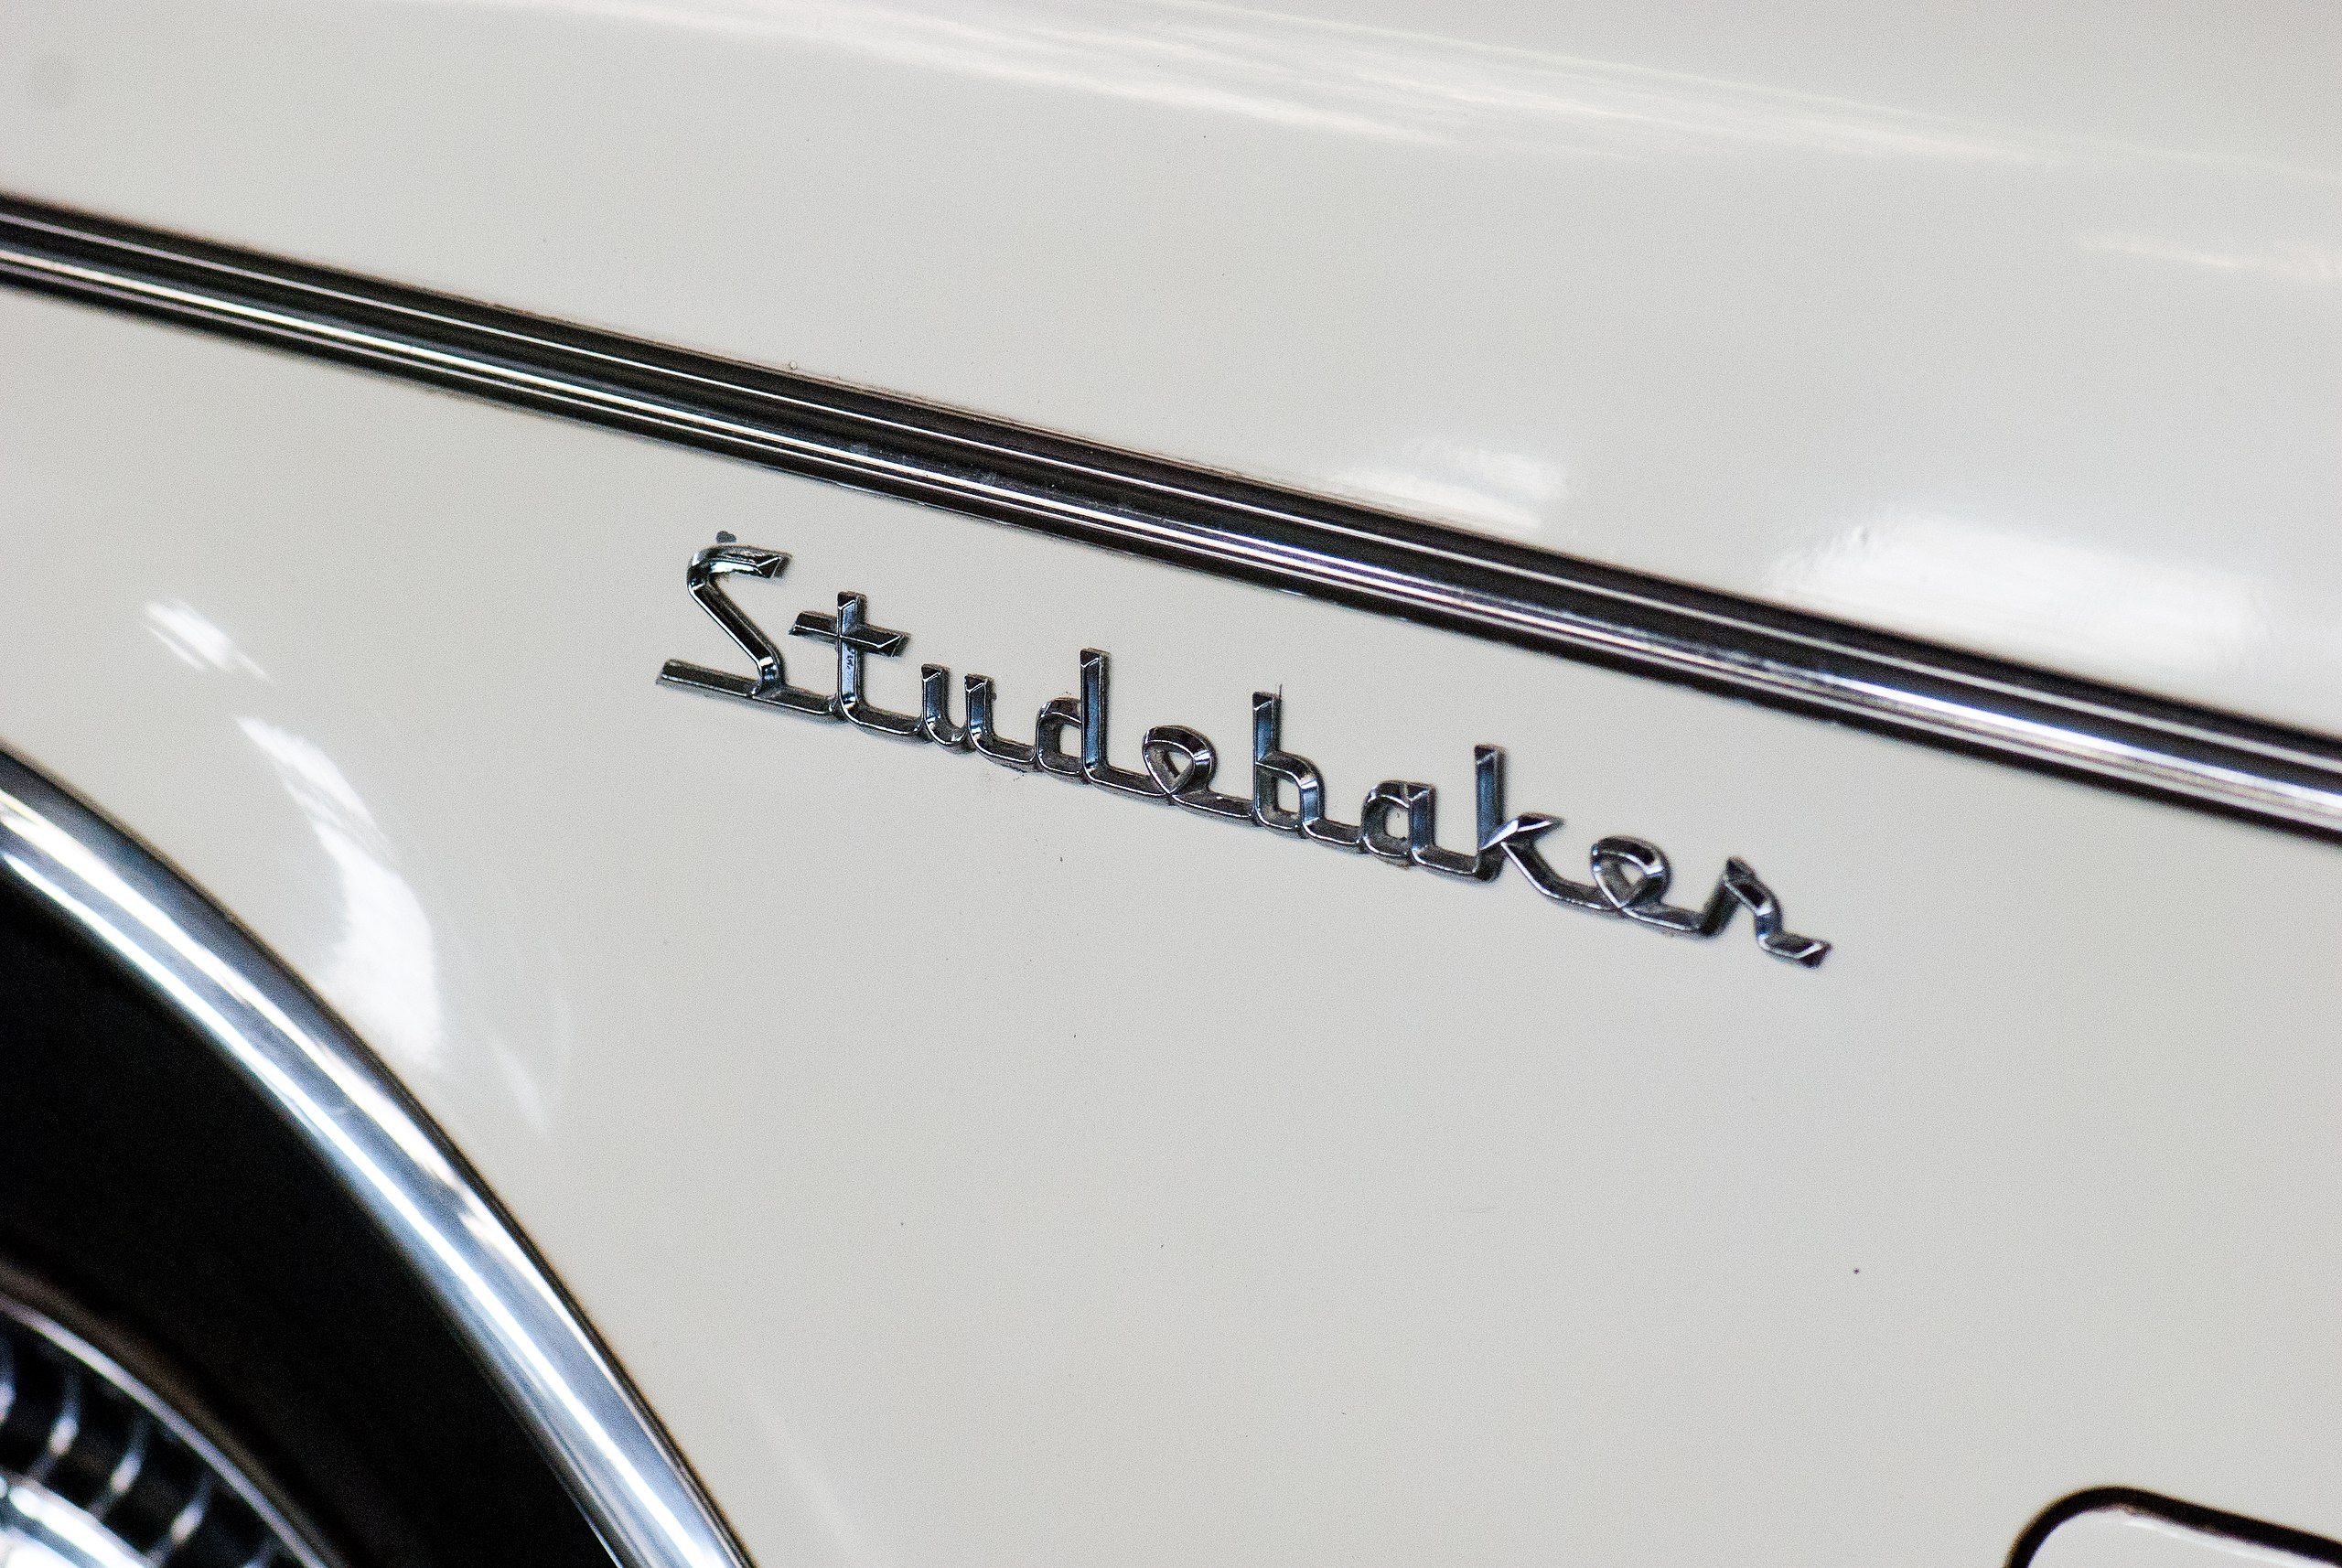 Studebaker_logo_(6007950532)